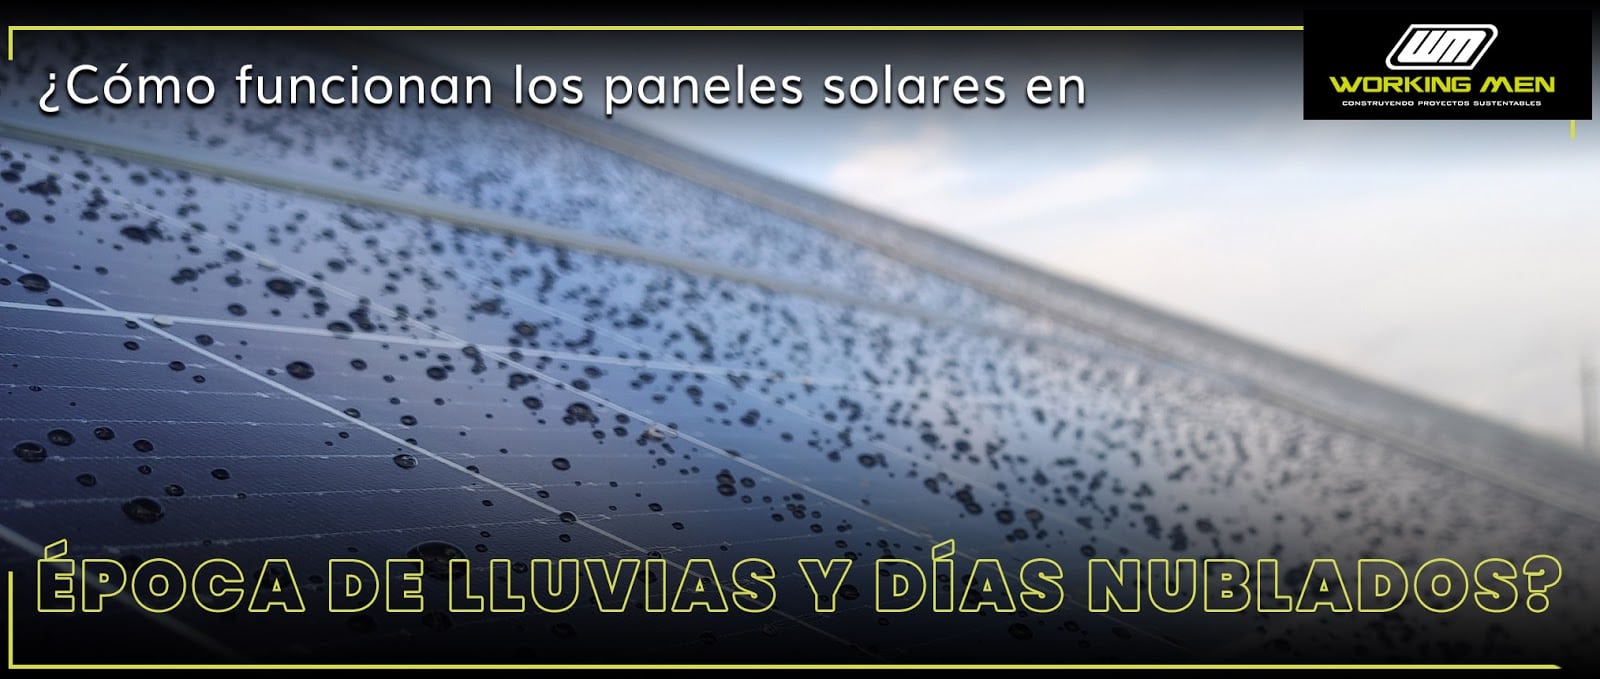 paneles solares en epoca de lluvias